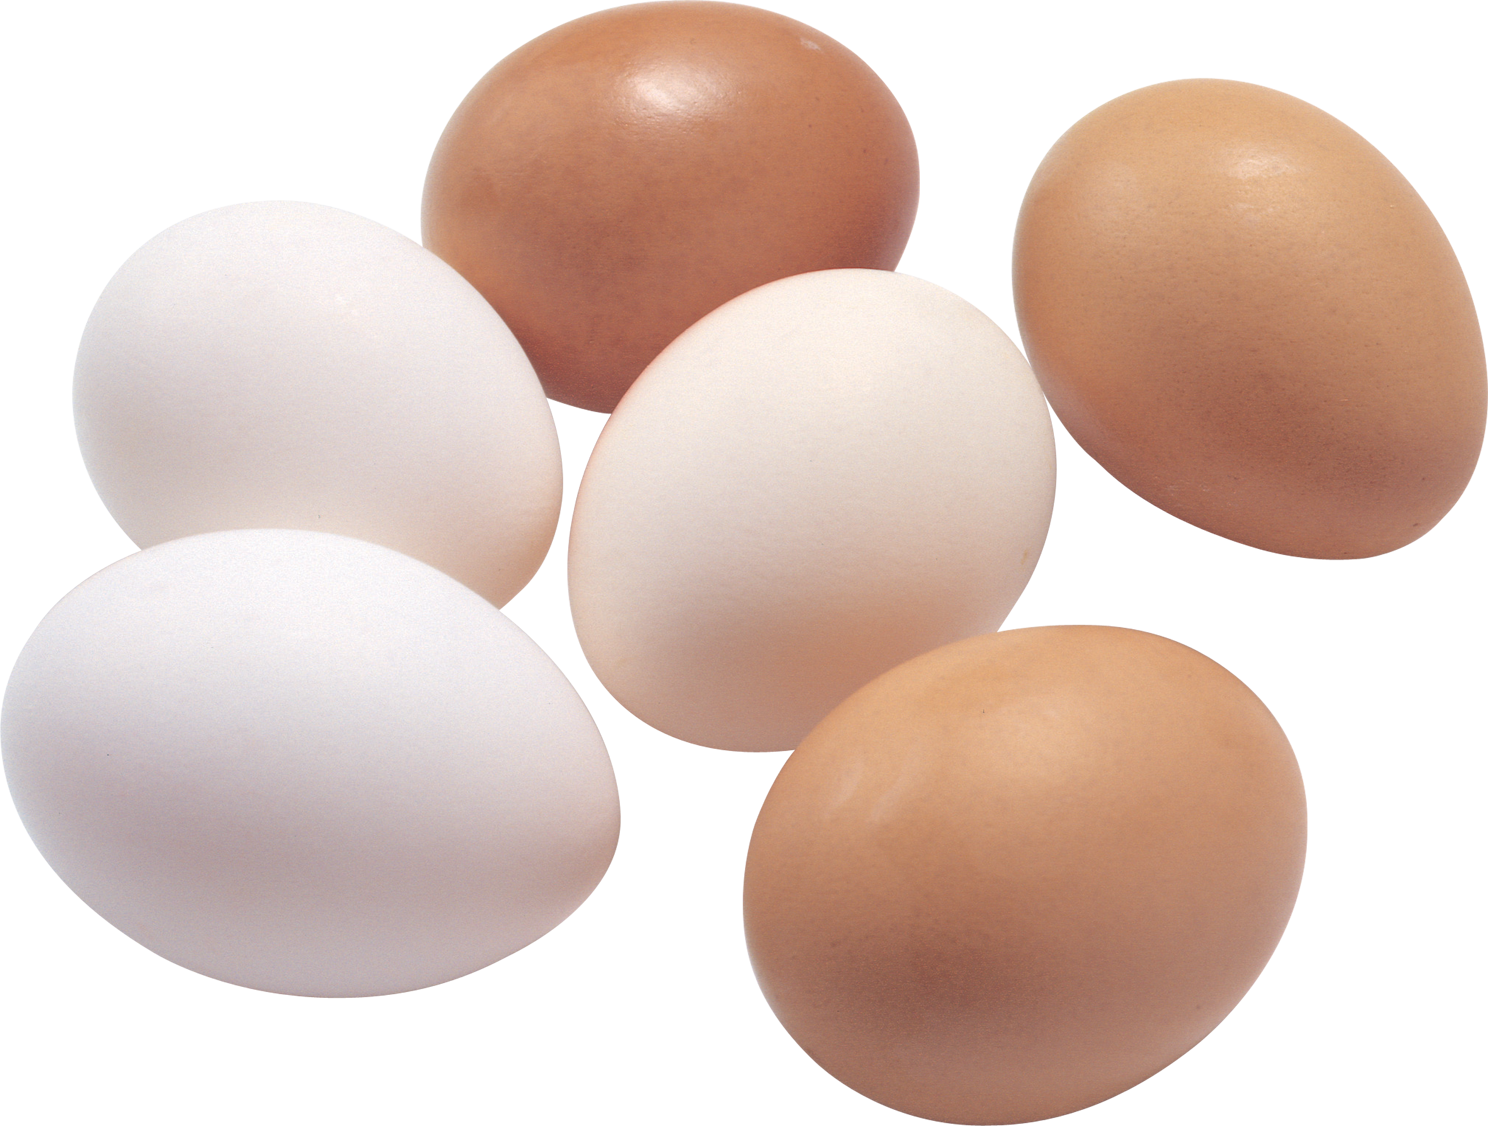 Шесть яиц - 3 белых и 2 коричневых